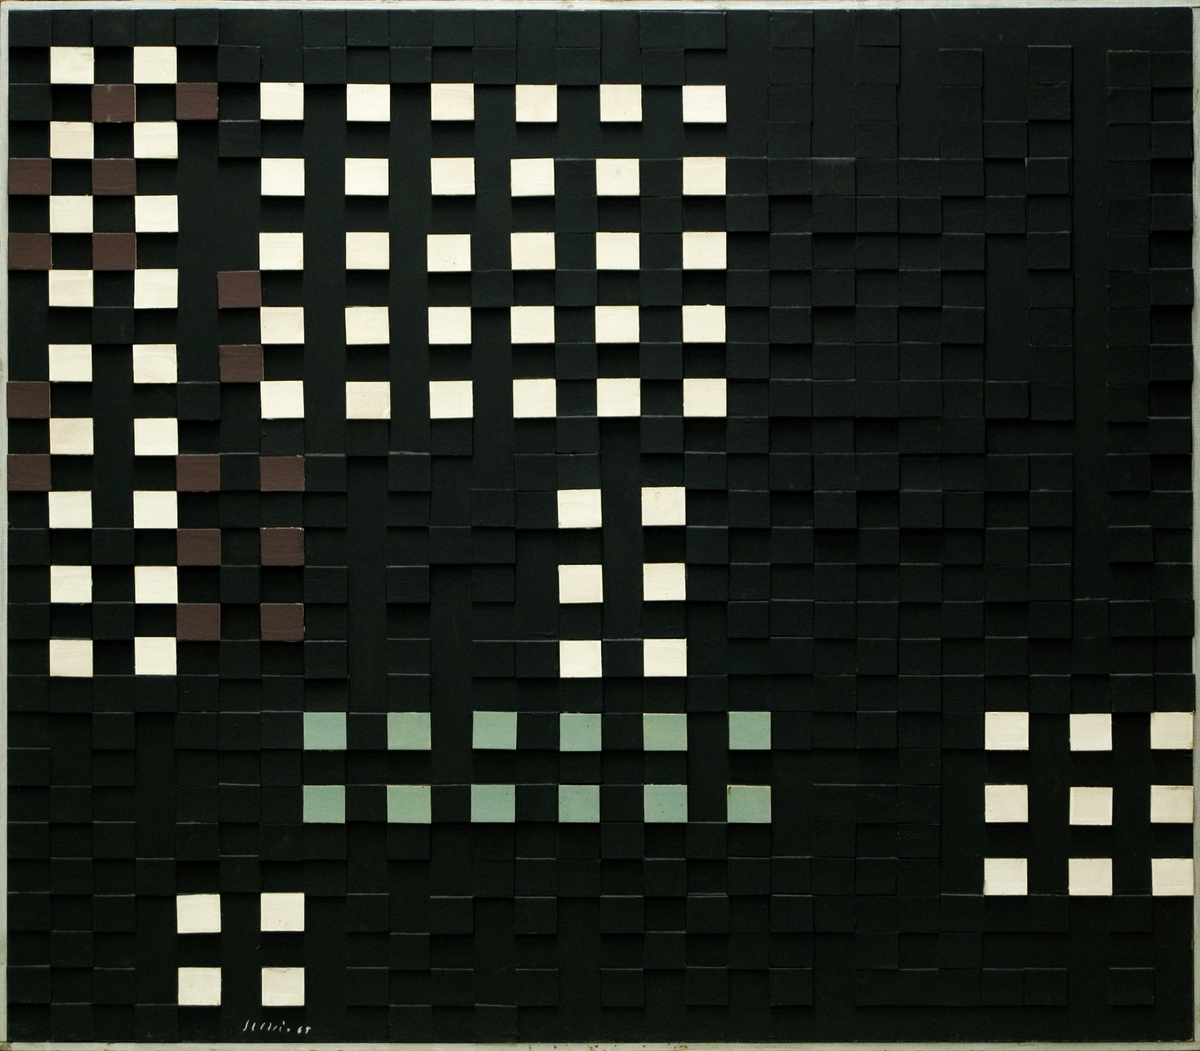 Målning på pannå, "Ljusrum 1" av Juho Suni. På pannå har klistrats kvadratiska pappbitar som målats i svart, vitt, grönt och brunt. Silverfärgad kantlist.
(Kat.kort)